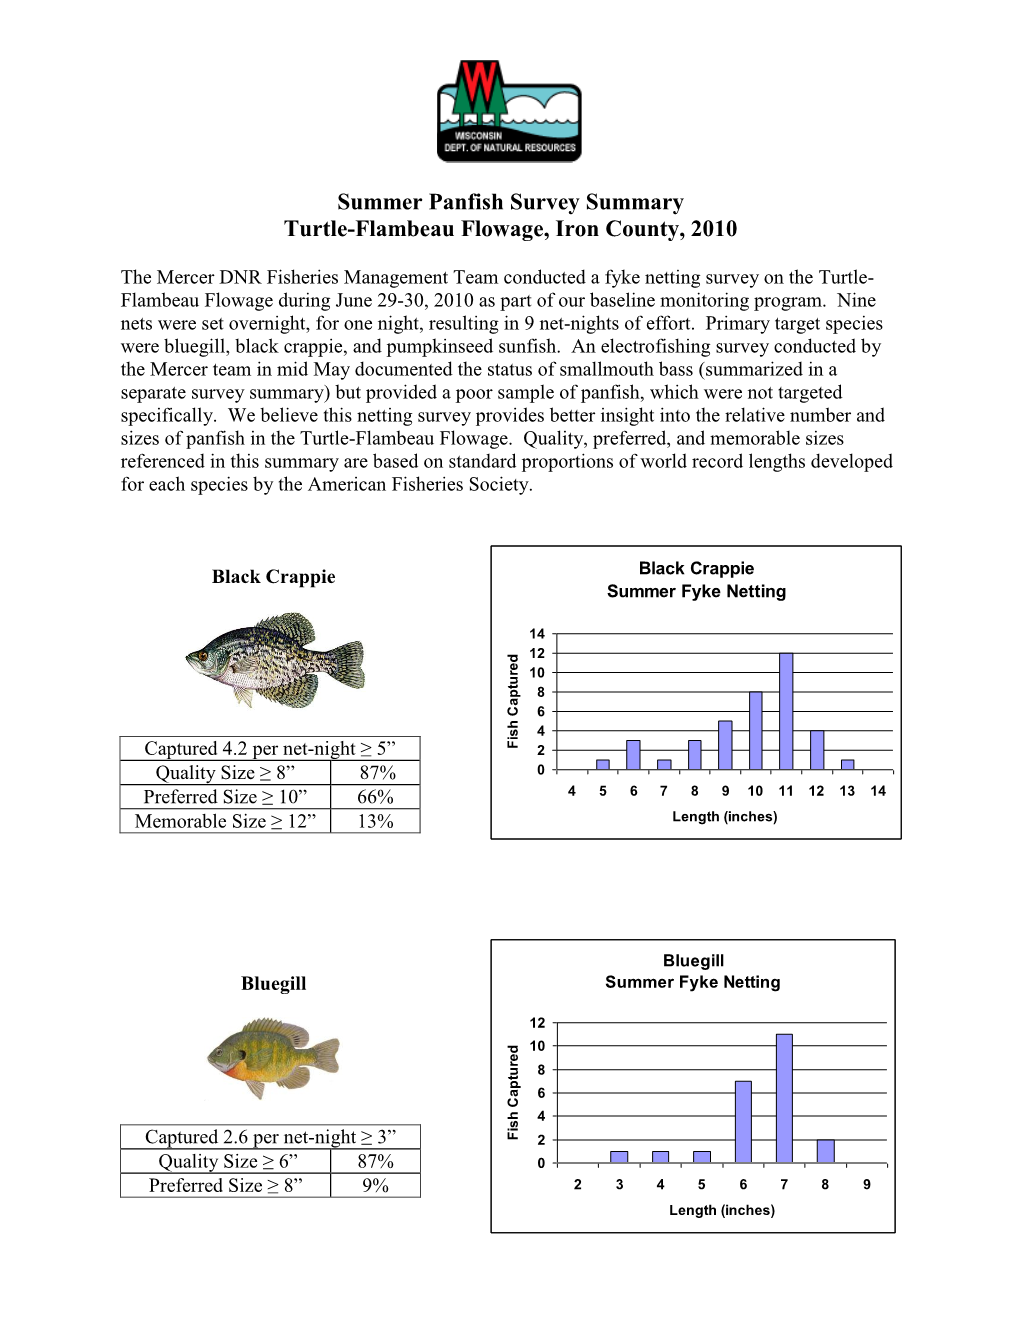 Summer Panfish Survey Summary Turtle-Flambeau Flowage, Iron County, 2010